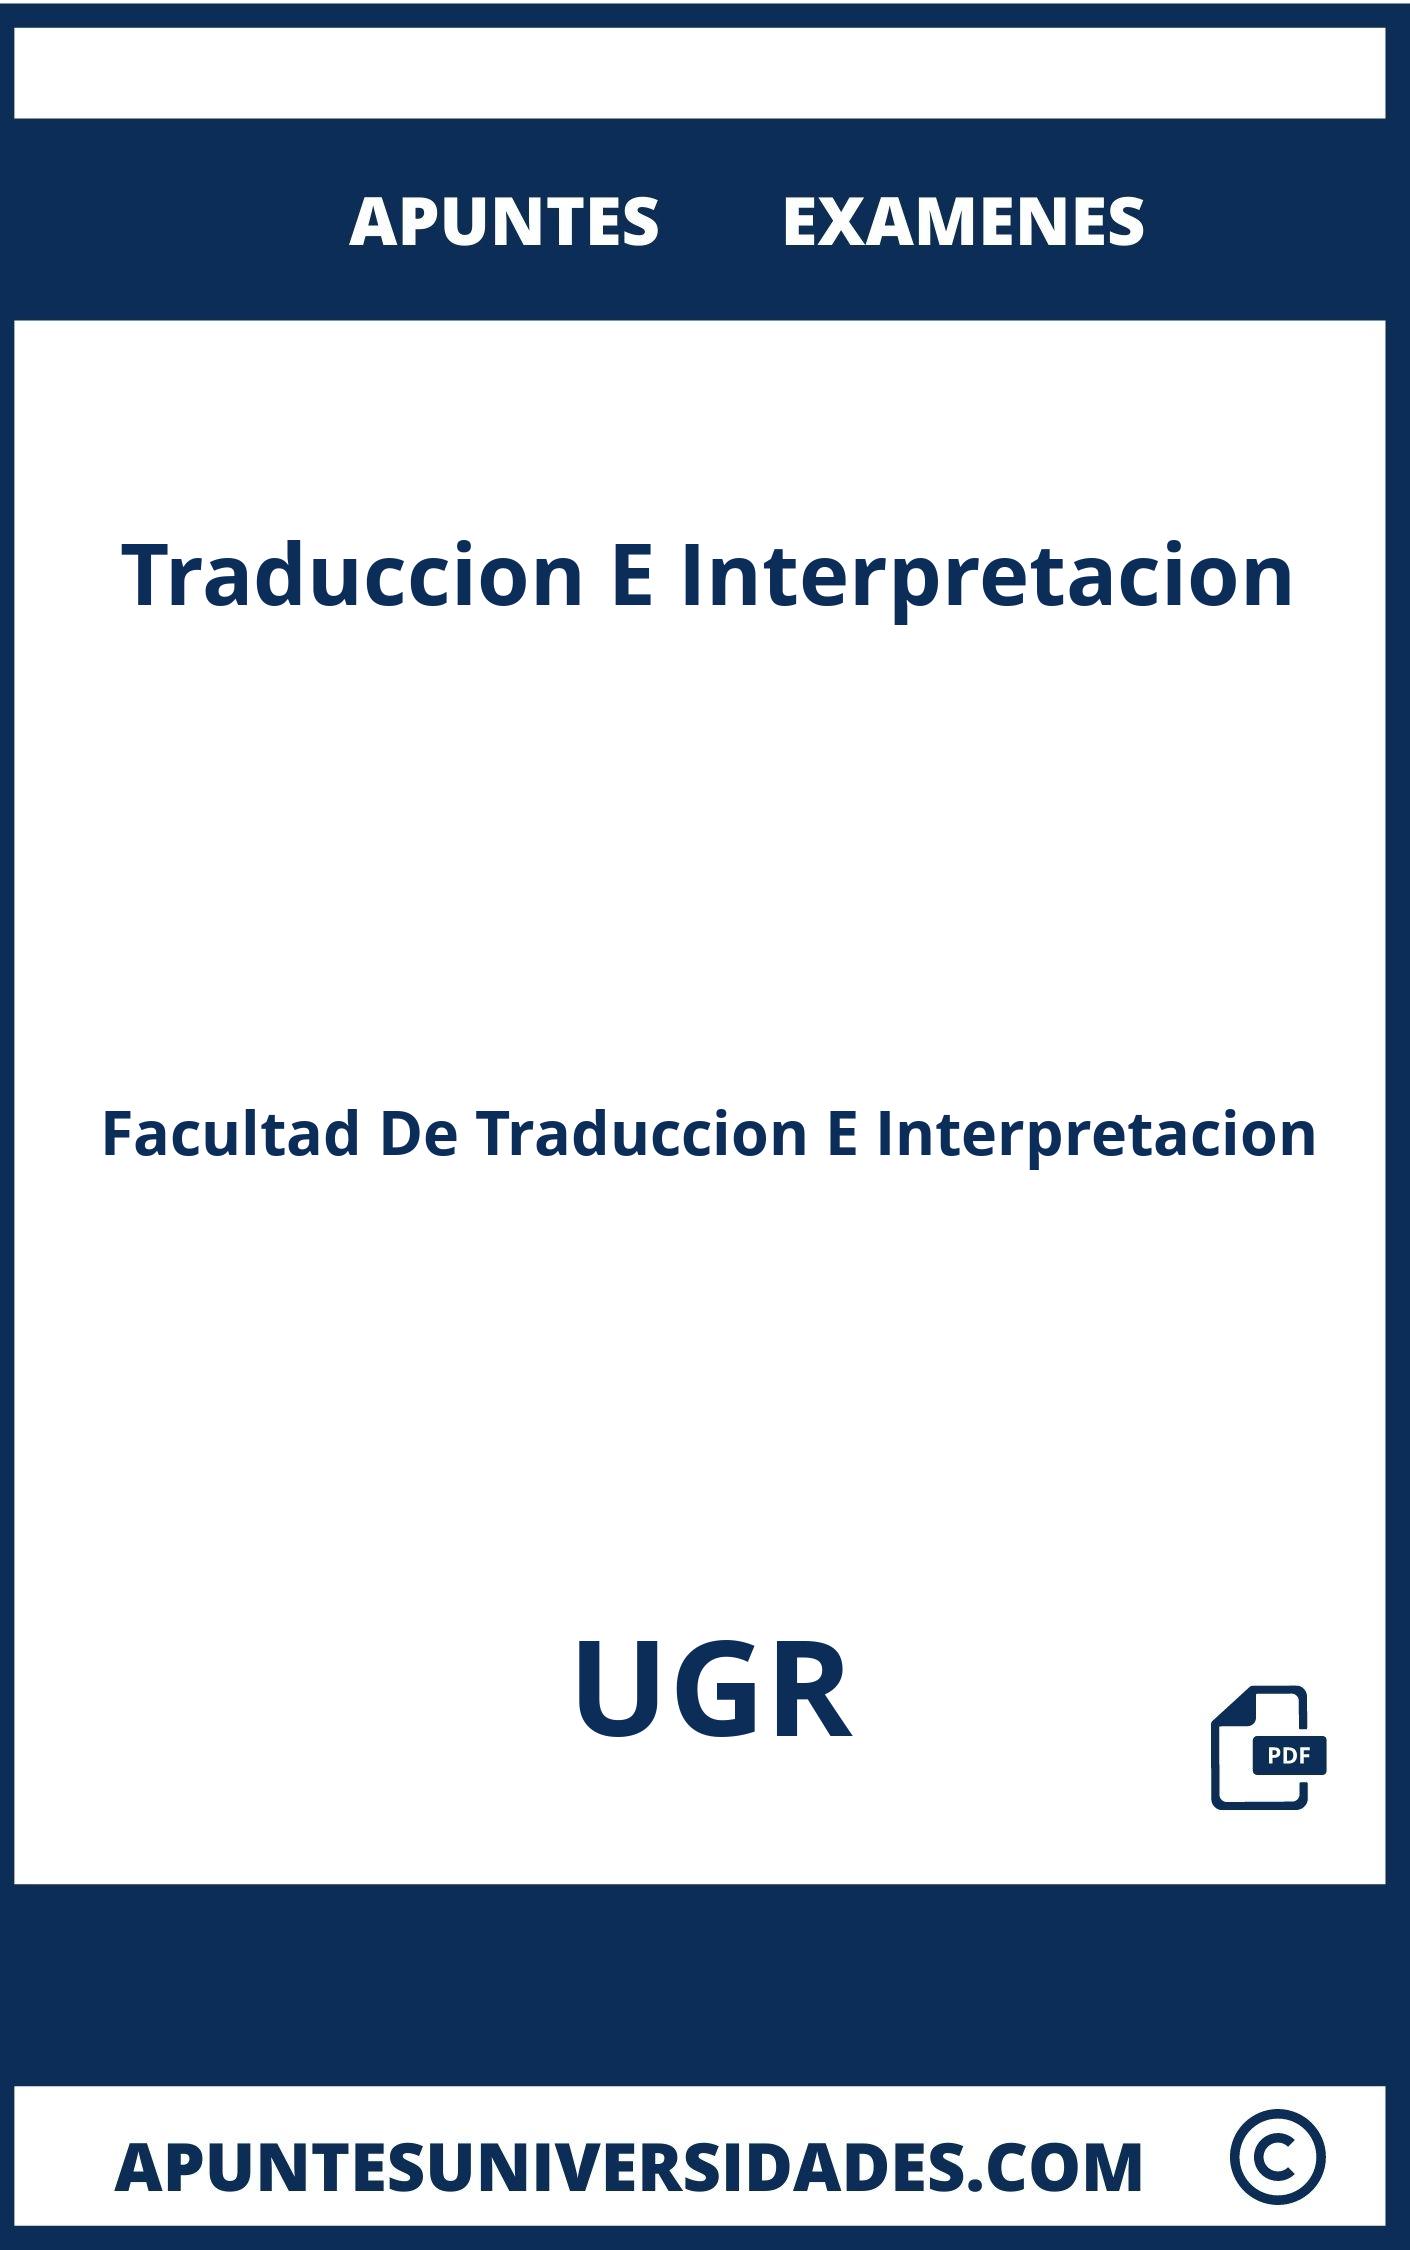 Apuntes Examenes Traduccion E Interpretacion UGR